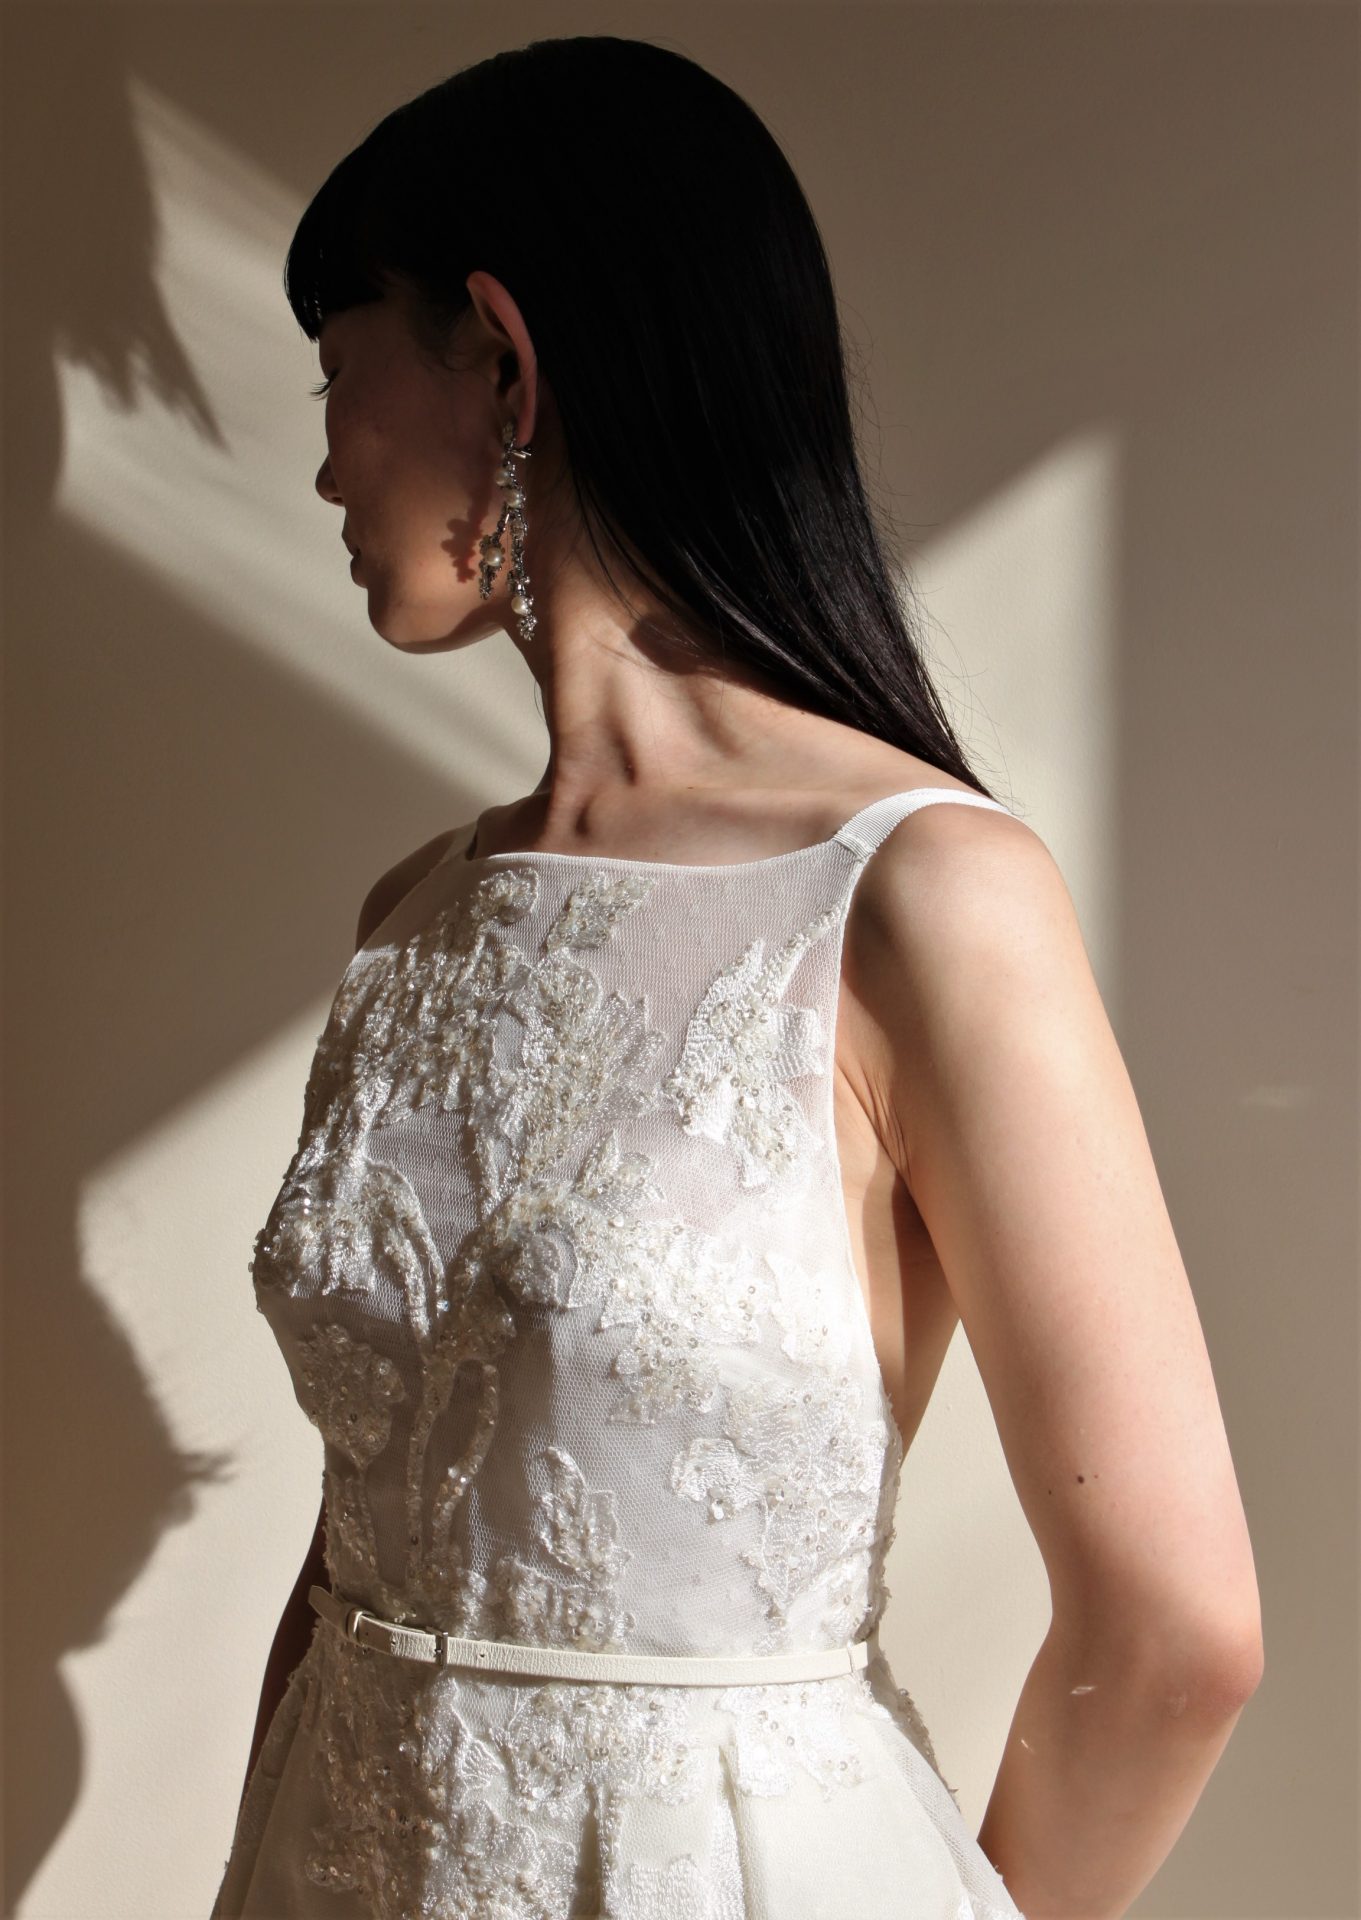 モードかつモダンな印象を持つエリーサーブブライドのウェディングドレスはキラキラと美しい輝きを放つ刺繍が印象的でかわいい一着